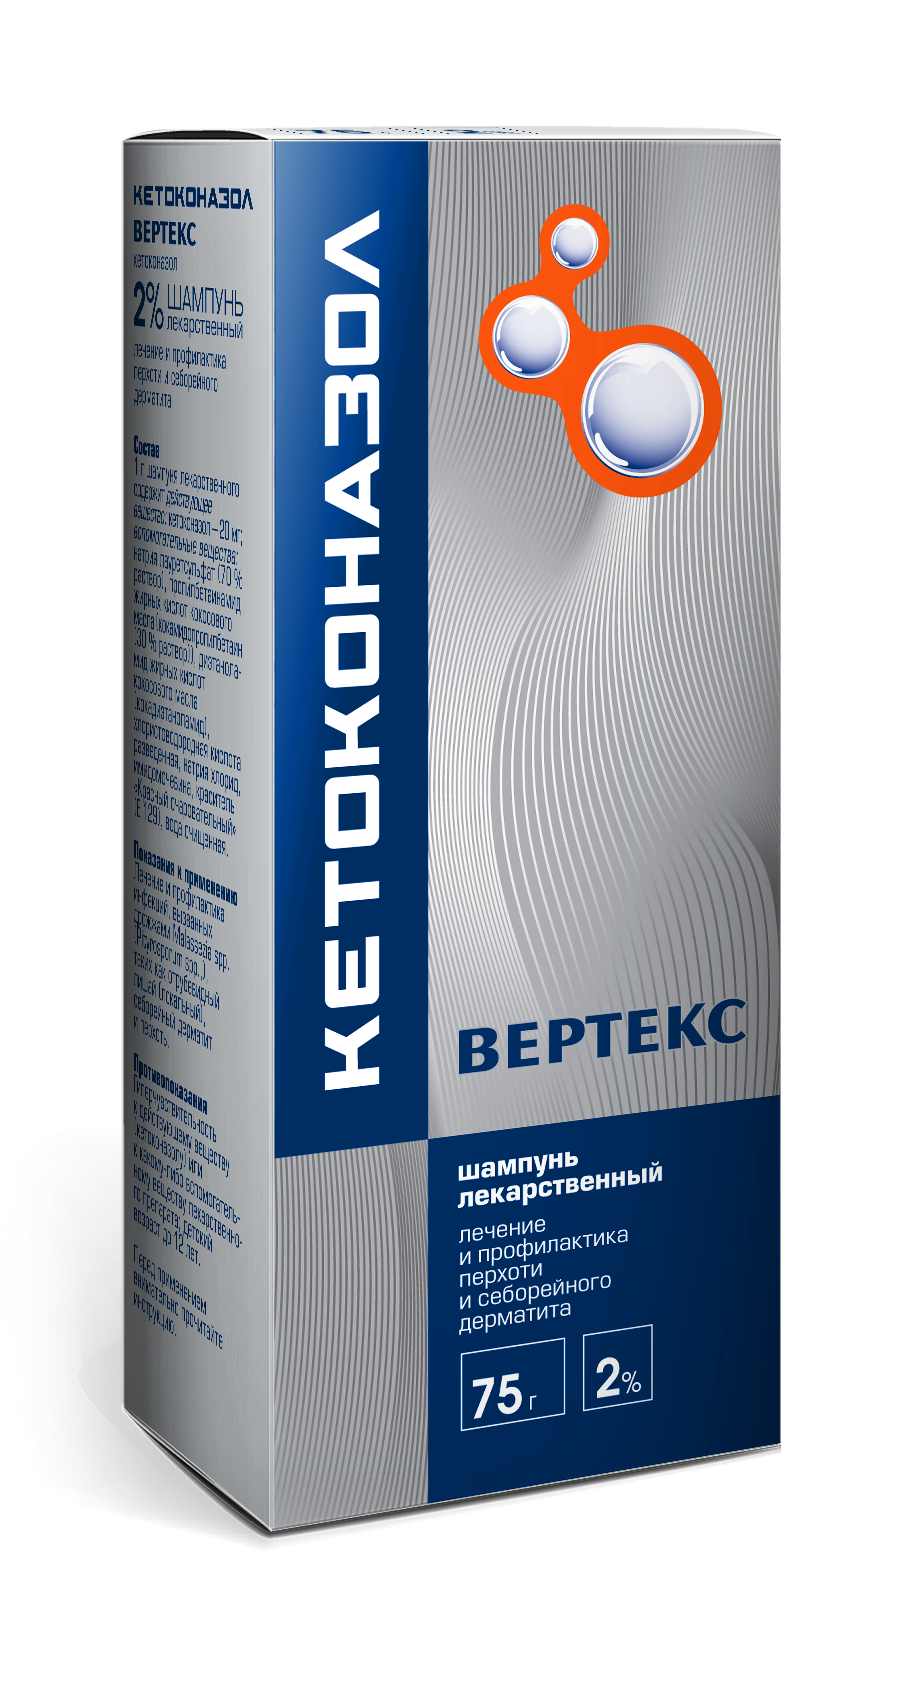 Кетоконазол Вертекс, шампунь 2%, 75 г кетоконазол вертекс шампунь 2% 150г